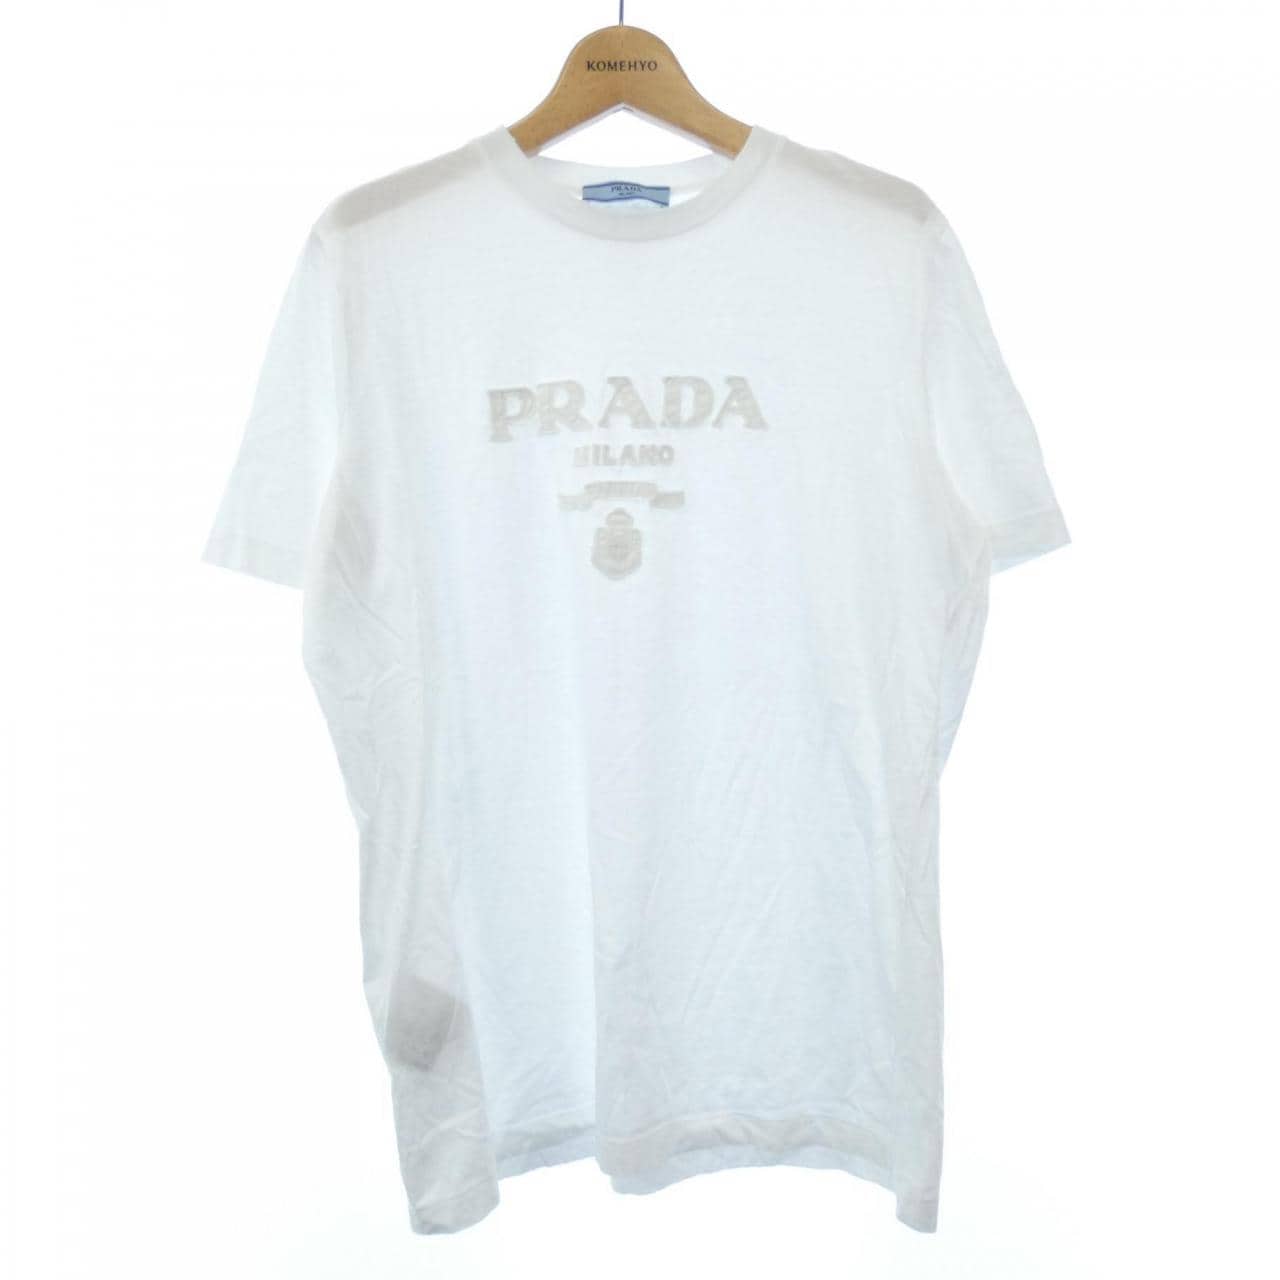 プラダ PRADA Tシャツ レディース